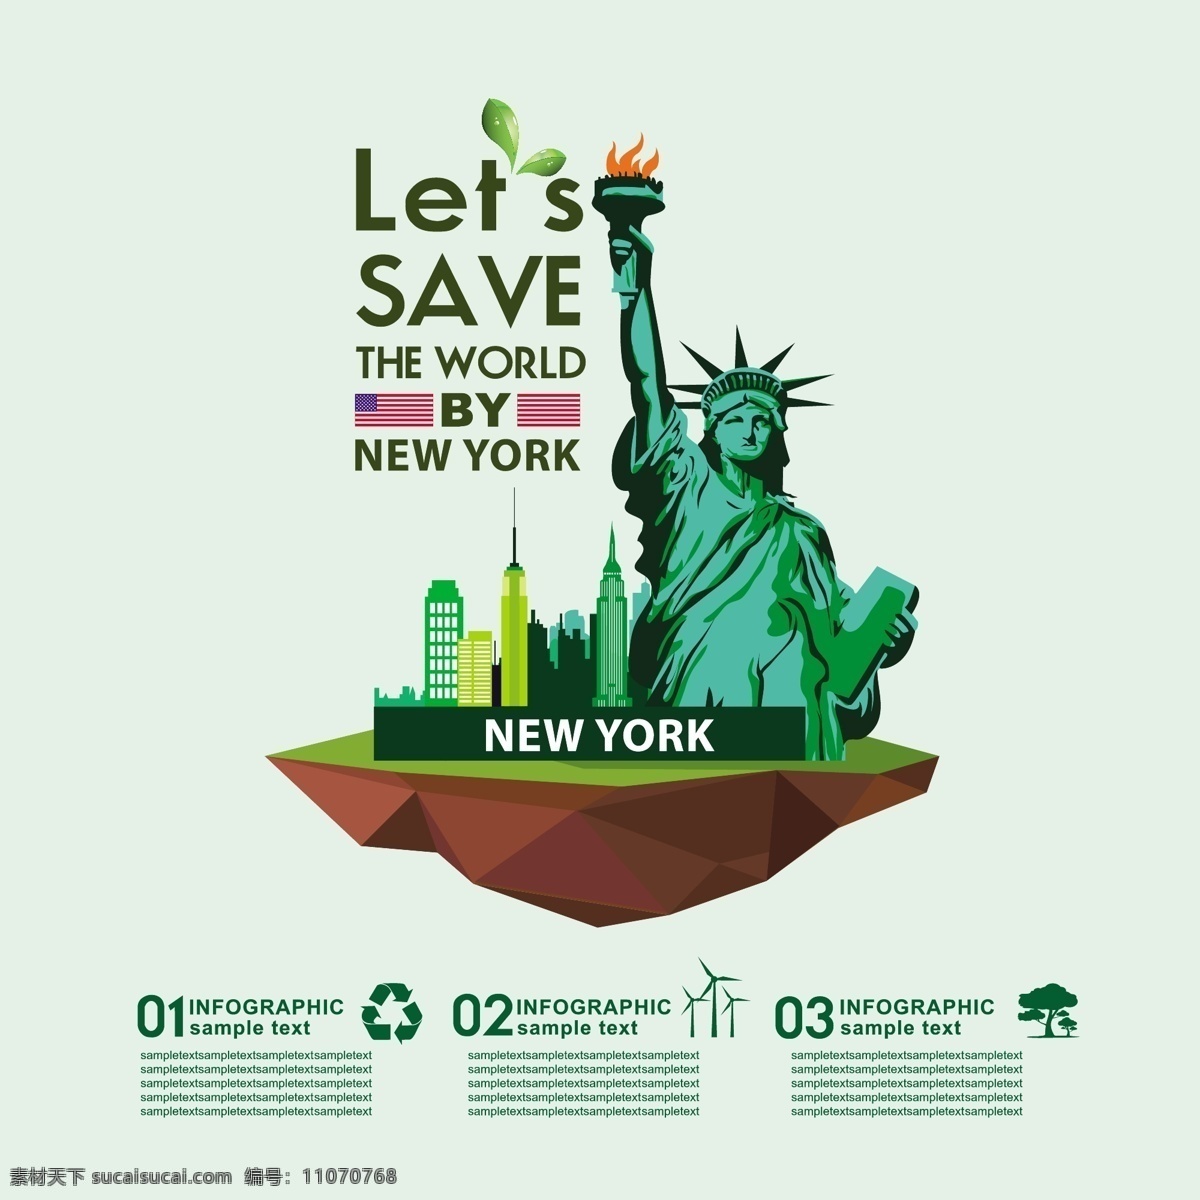 生态信息图表 环保 创意设计 eco 绿色 美国 纽约 循环 能源 节能 低碳 生态 回收 环保标志 ppt素材 底纹背景 商务金融 商业插画